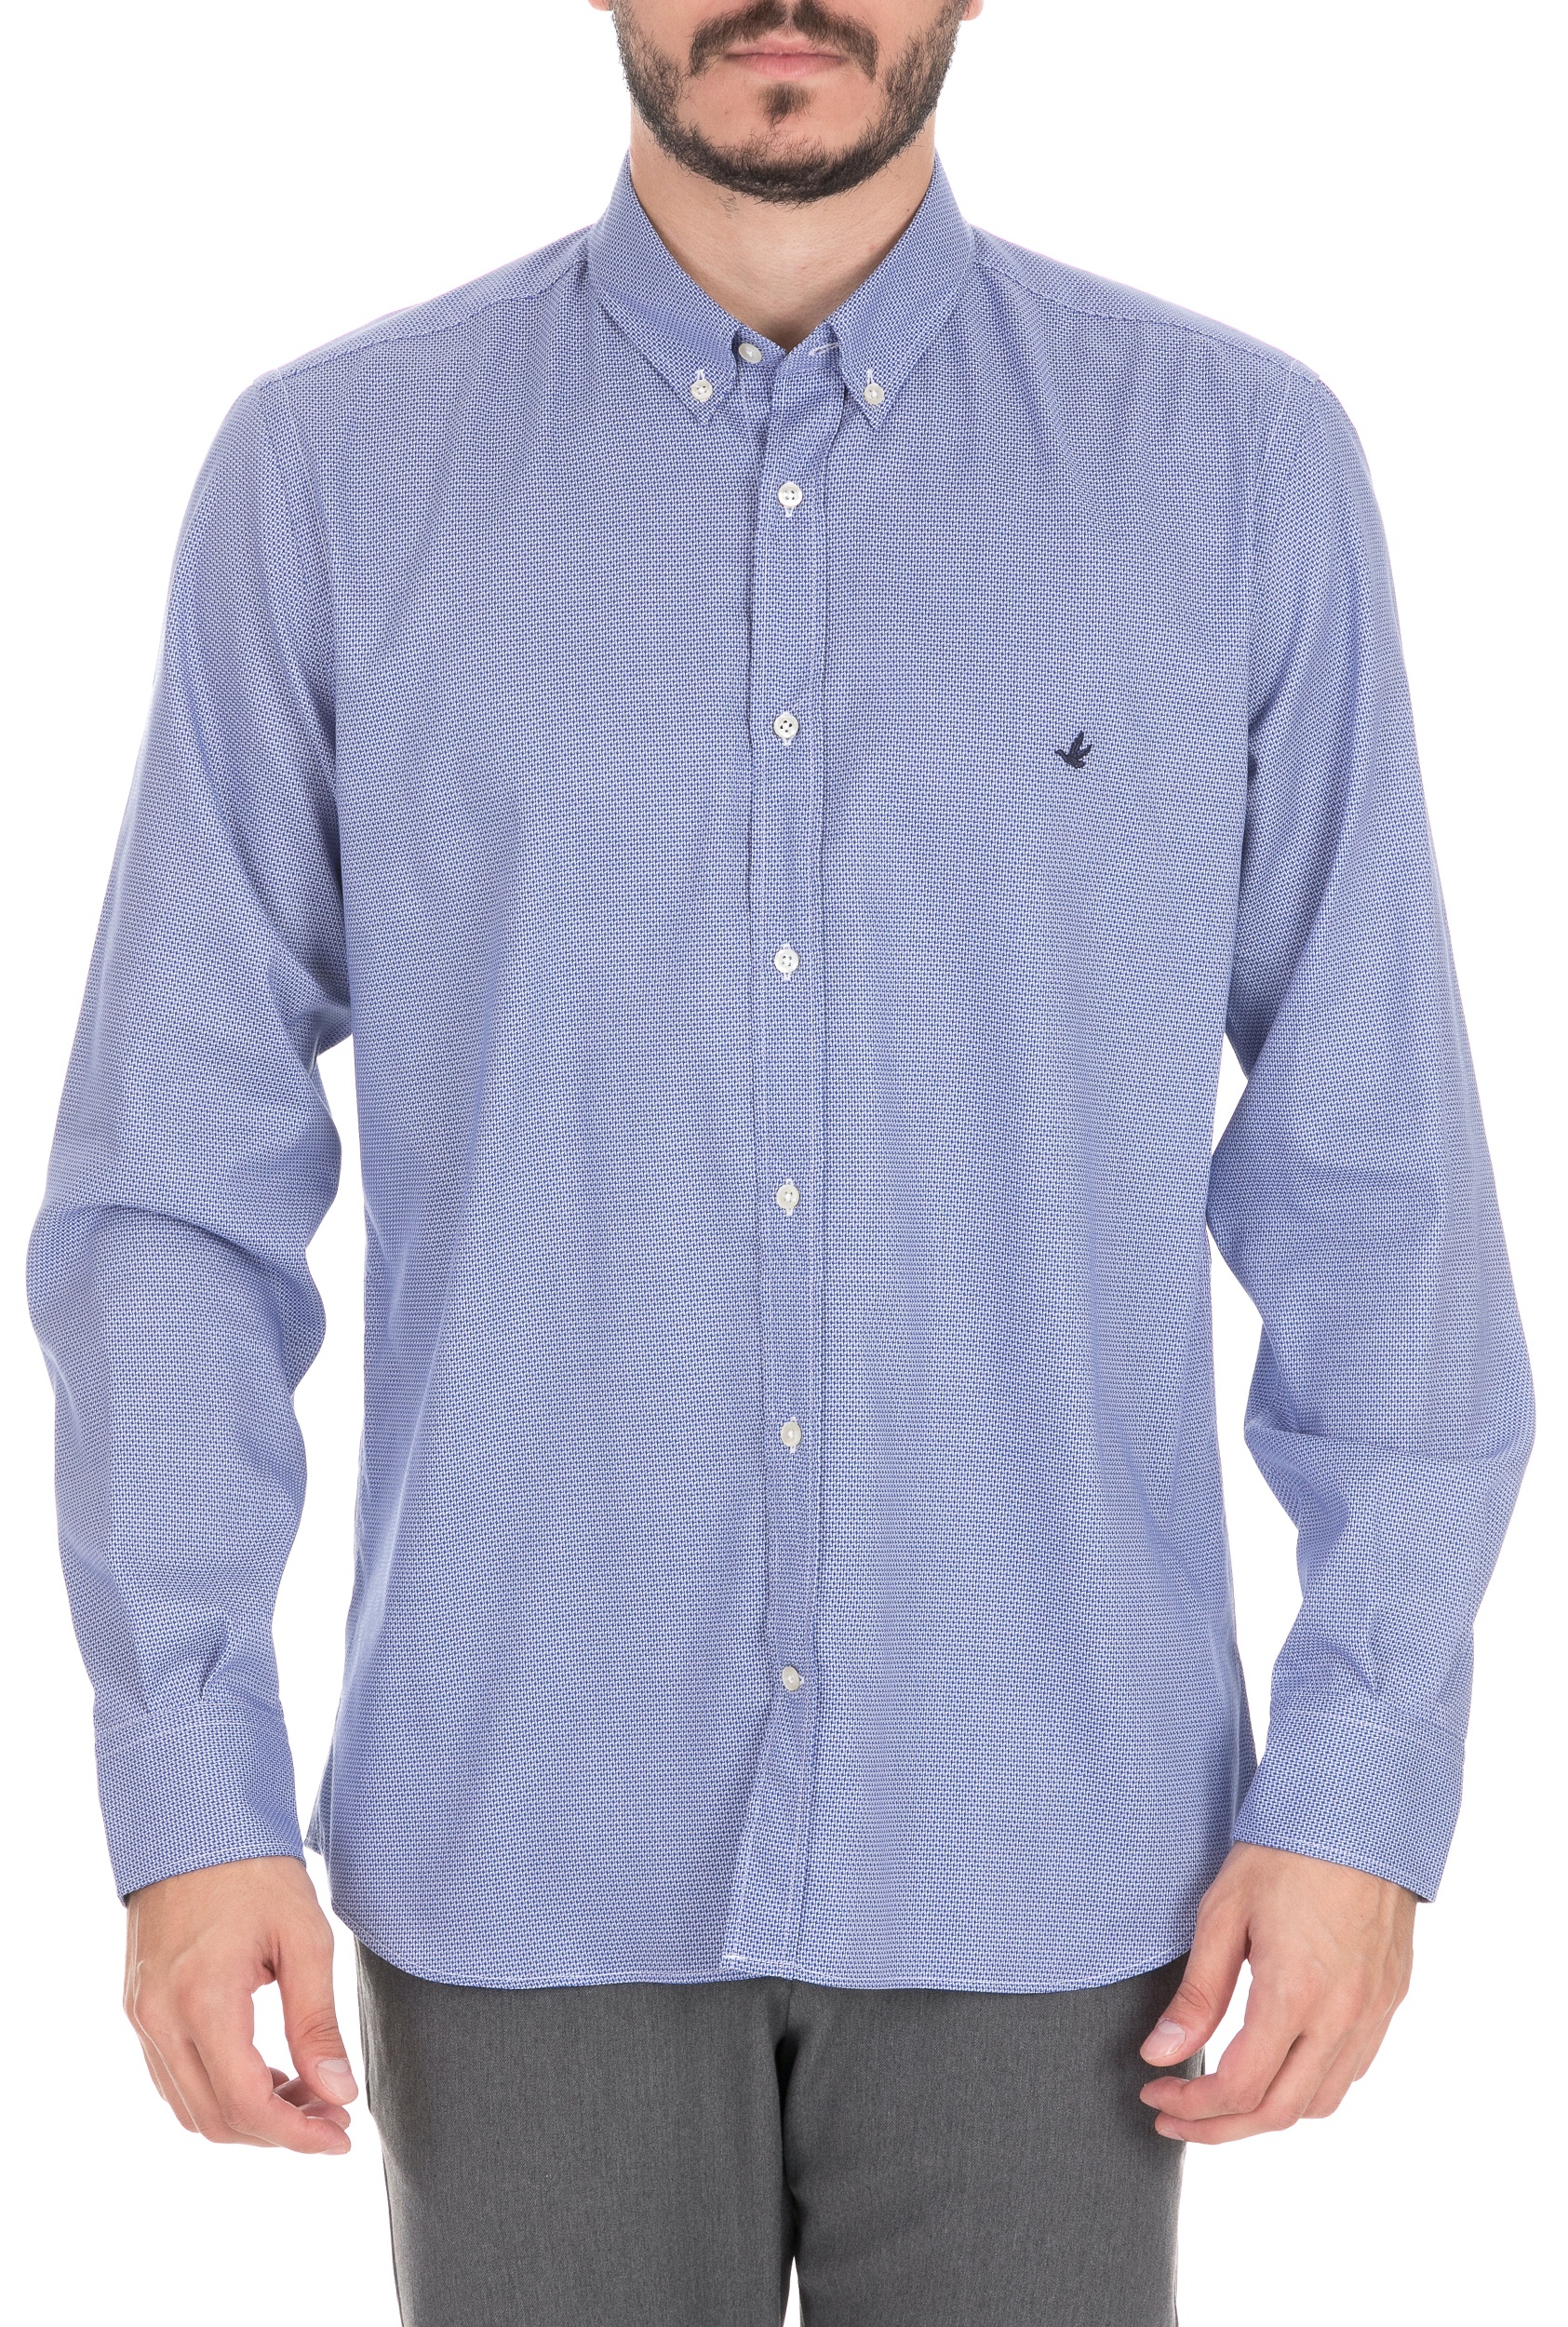 BROOKSFIELD Ανδρικό πουκάμισο BROOKSFIELD γαλάζιο